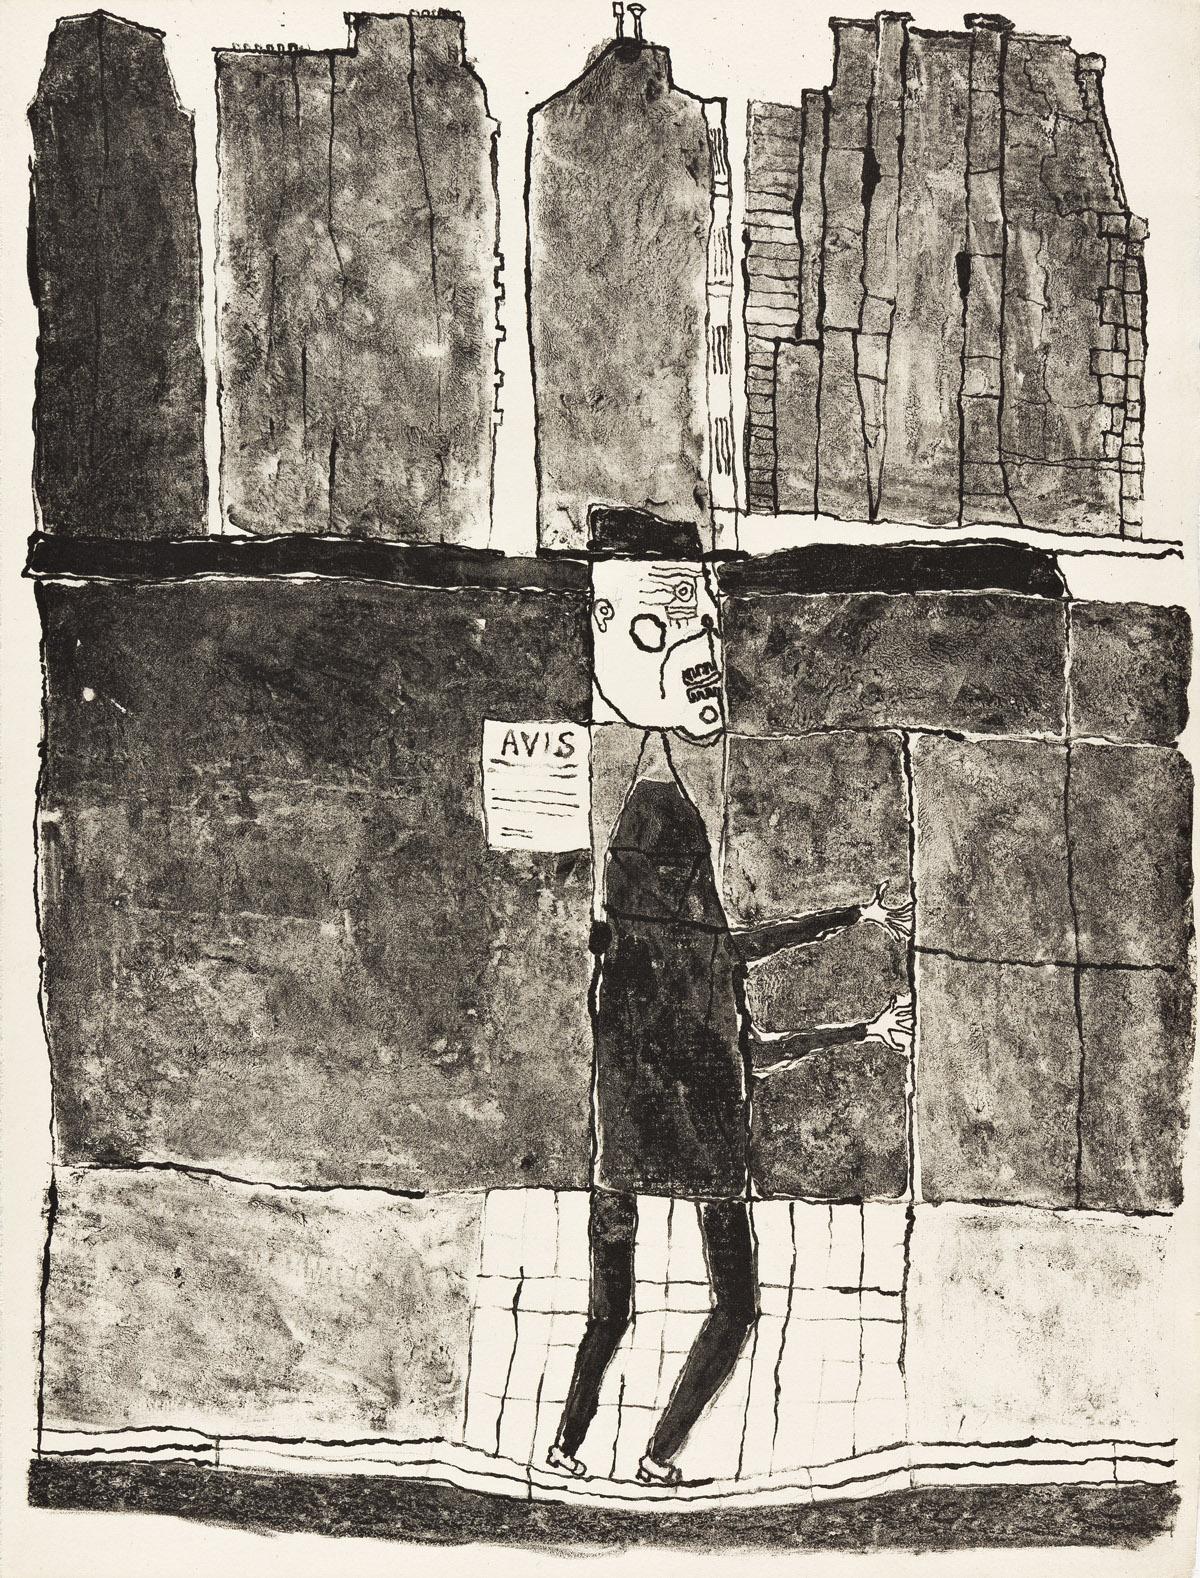 Jean Dubuffet Abstract Print - Mur et voyageurs and Mur et avis